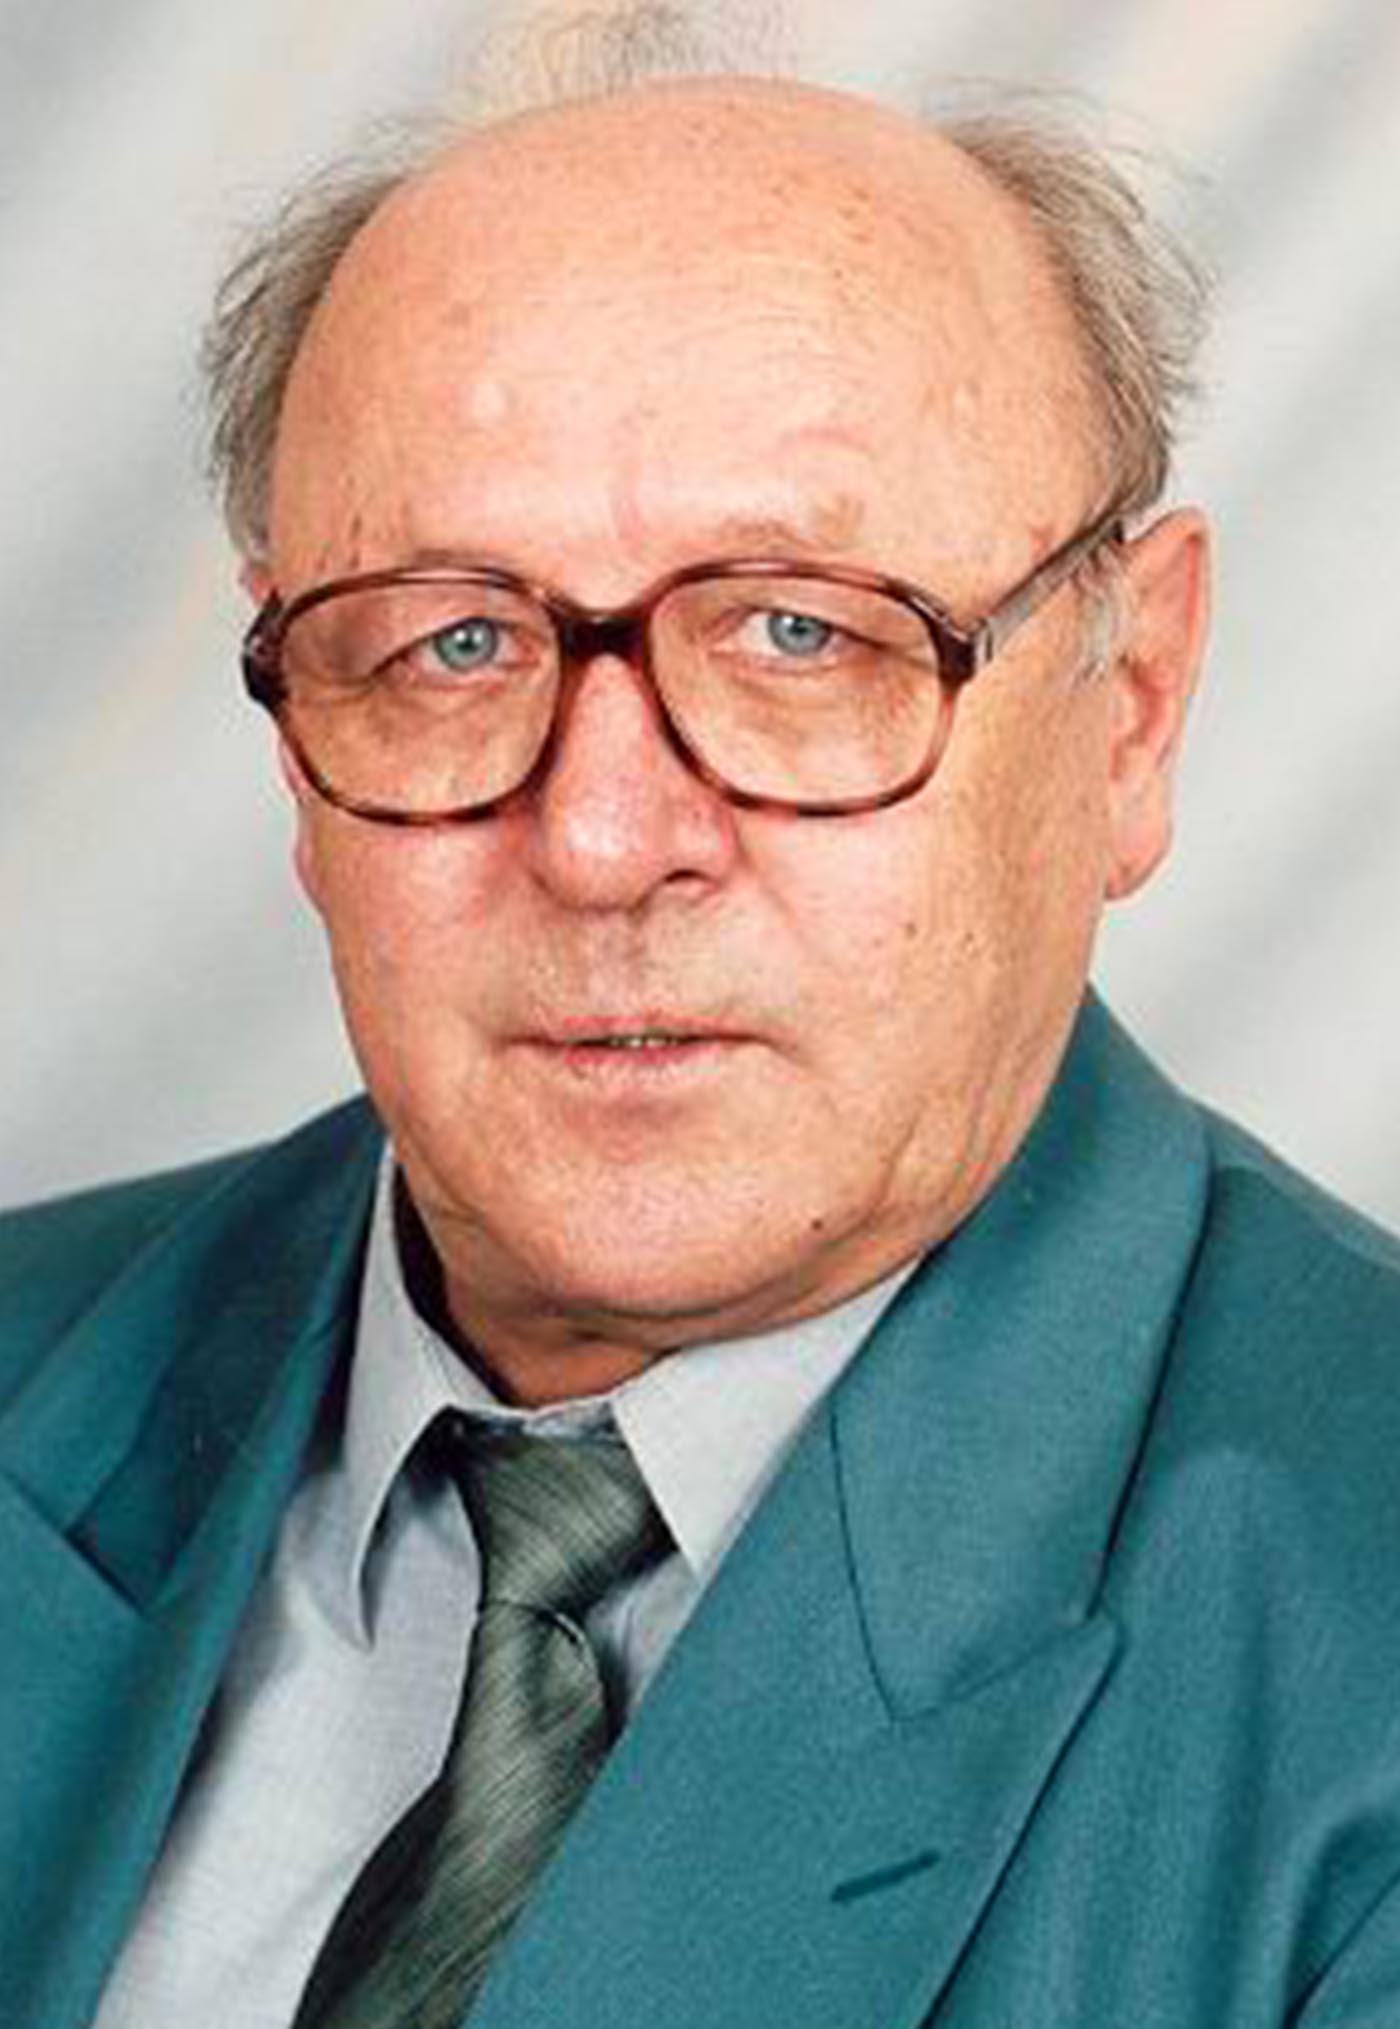 Селезнев Евгений Федорович- учитель ОБЖ, директор (1990-2004 гг.)